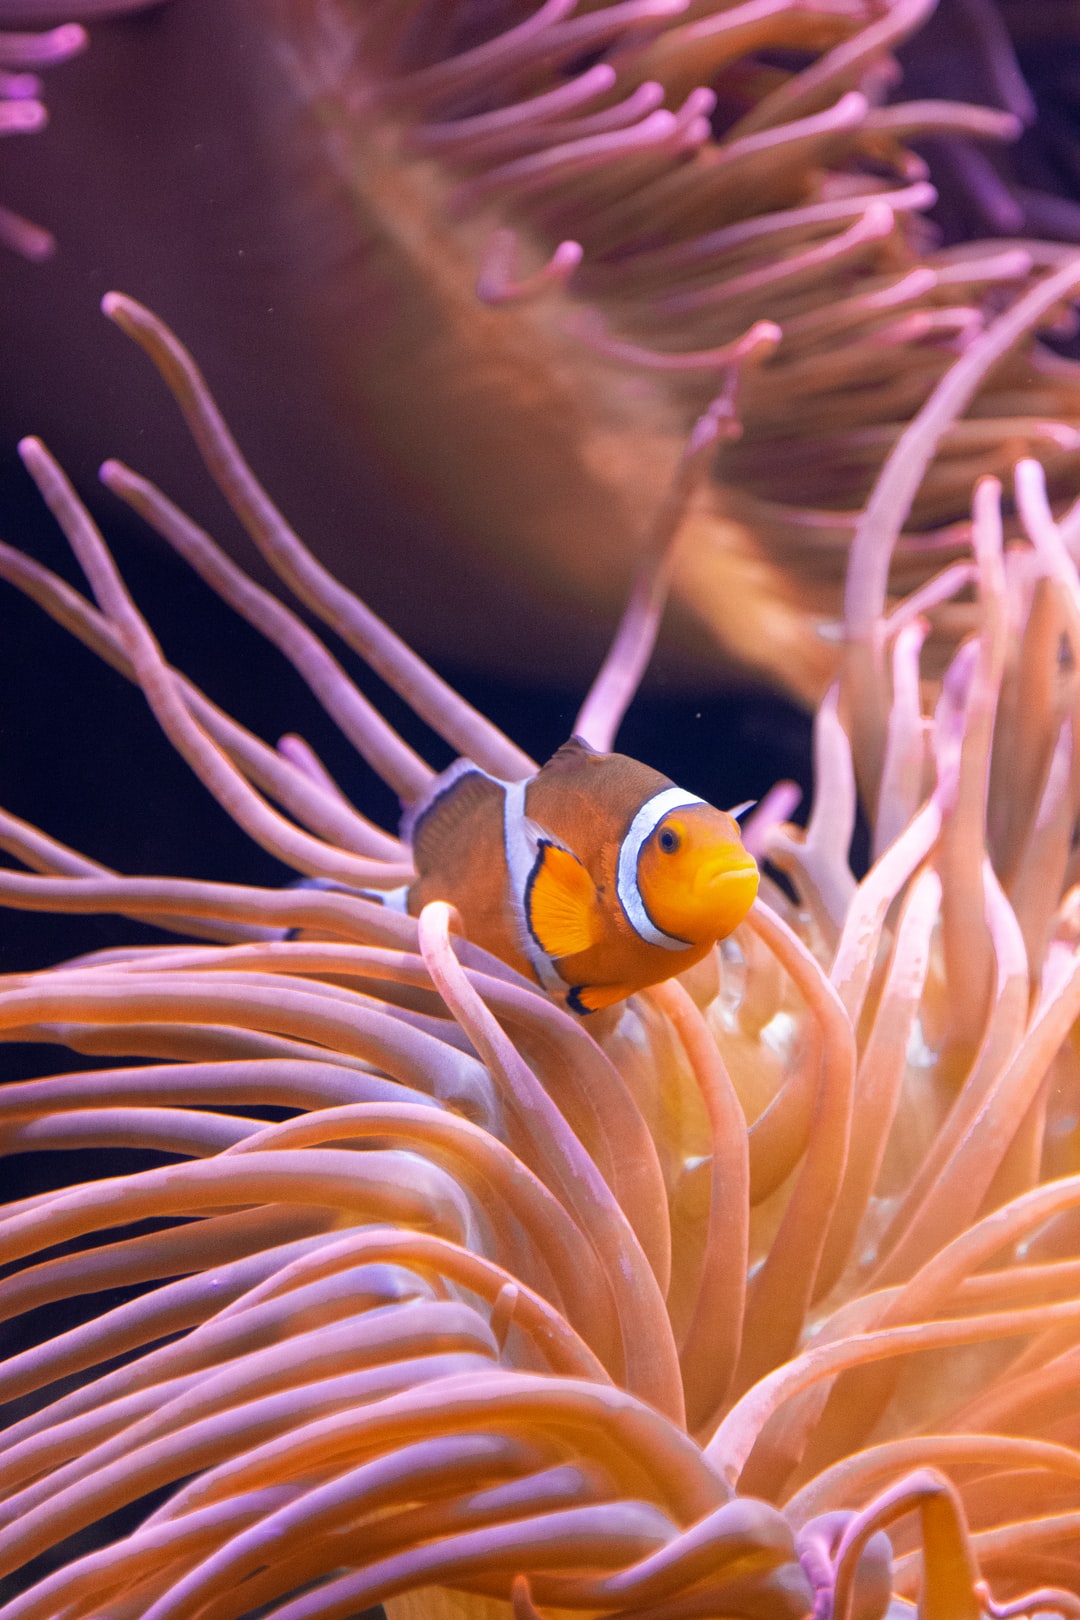 25 wichtige Fragen zu Aquarium Online